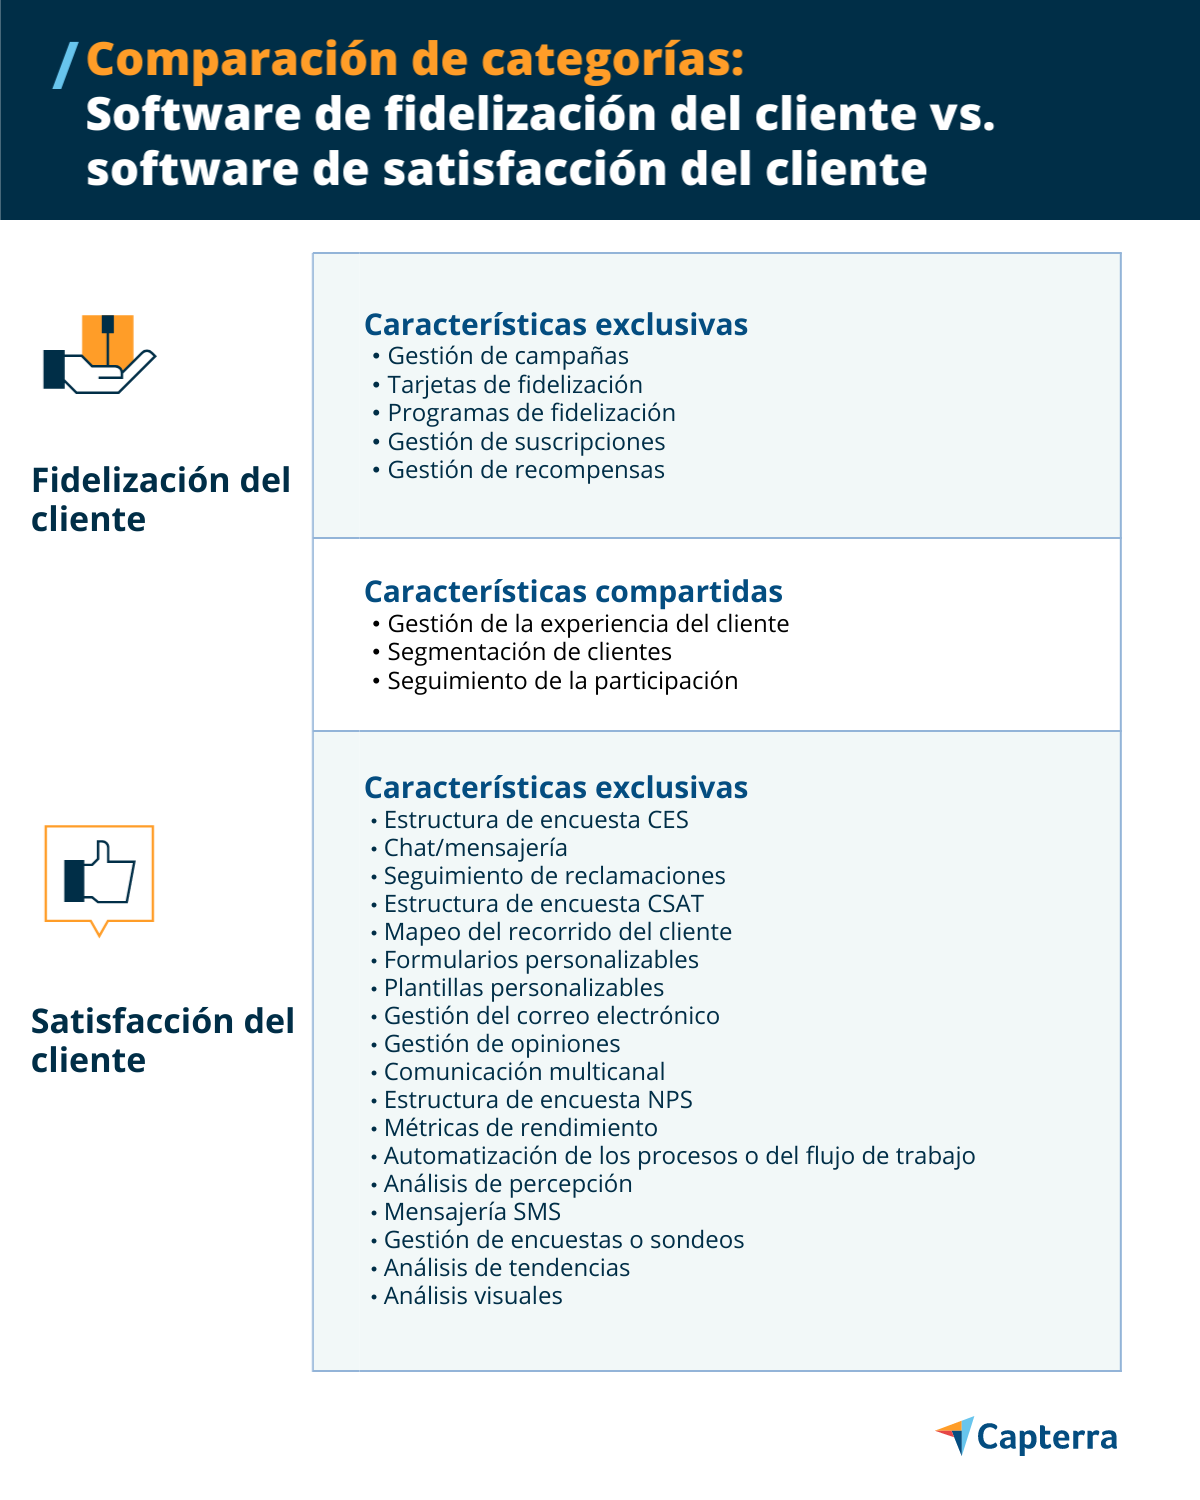 Características de la satisfacción del cliente y la fidelización del cliente
